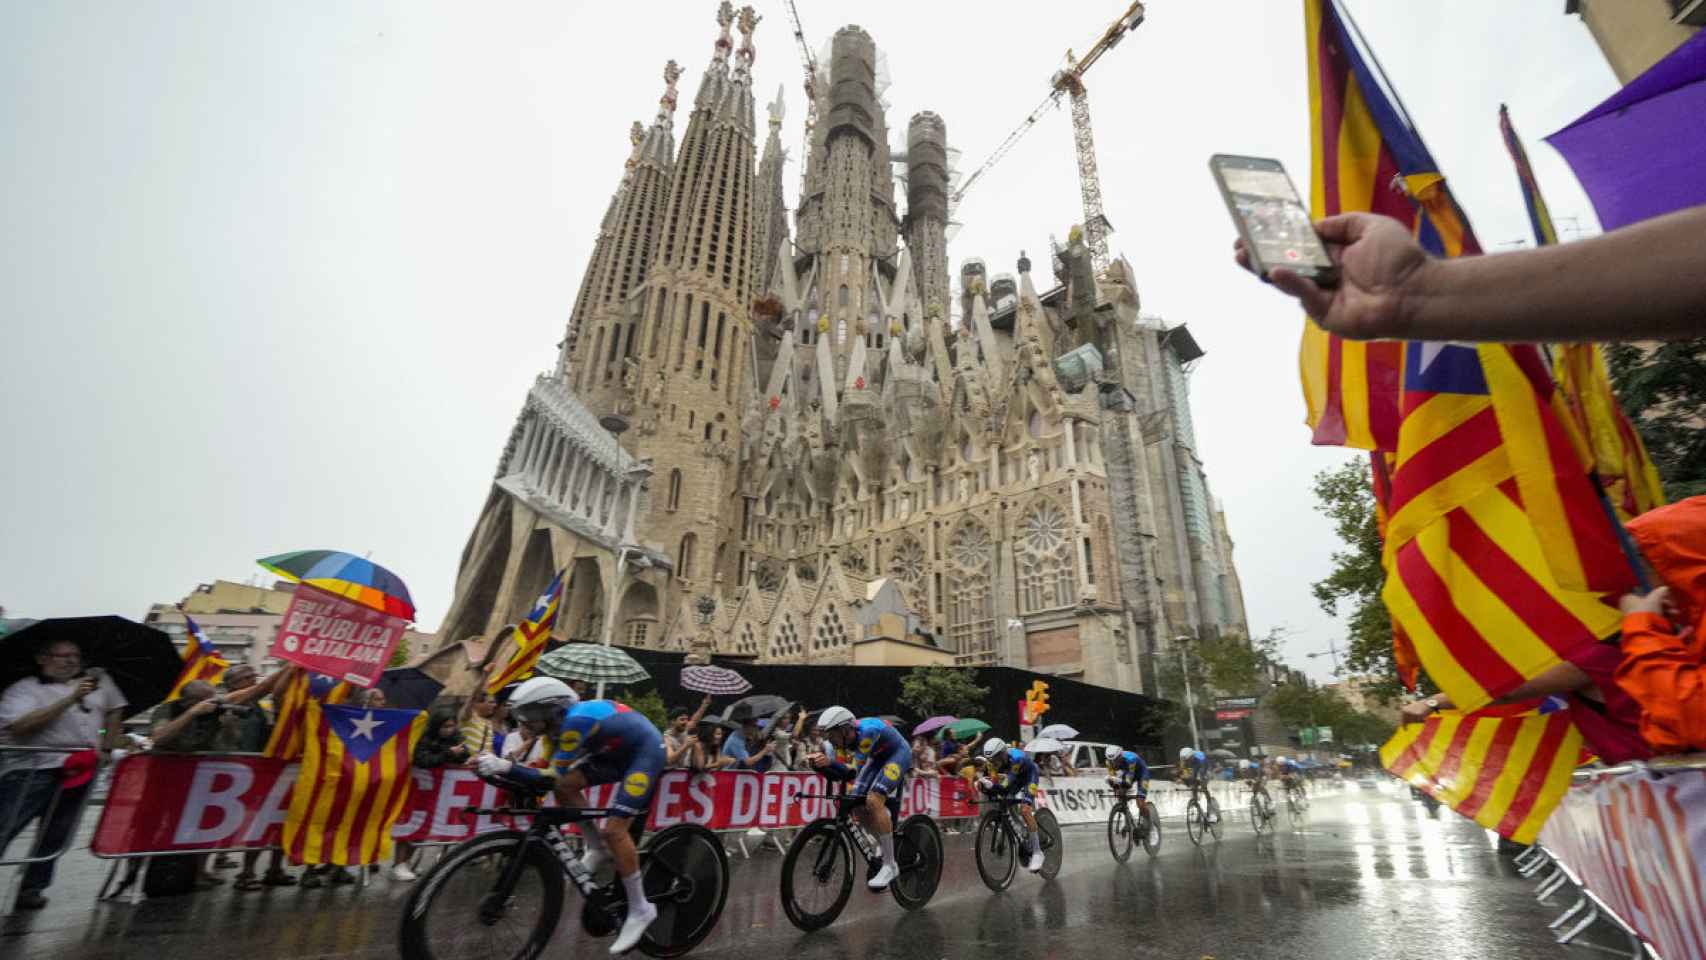 La Vuelta en Barcelona